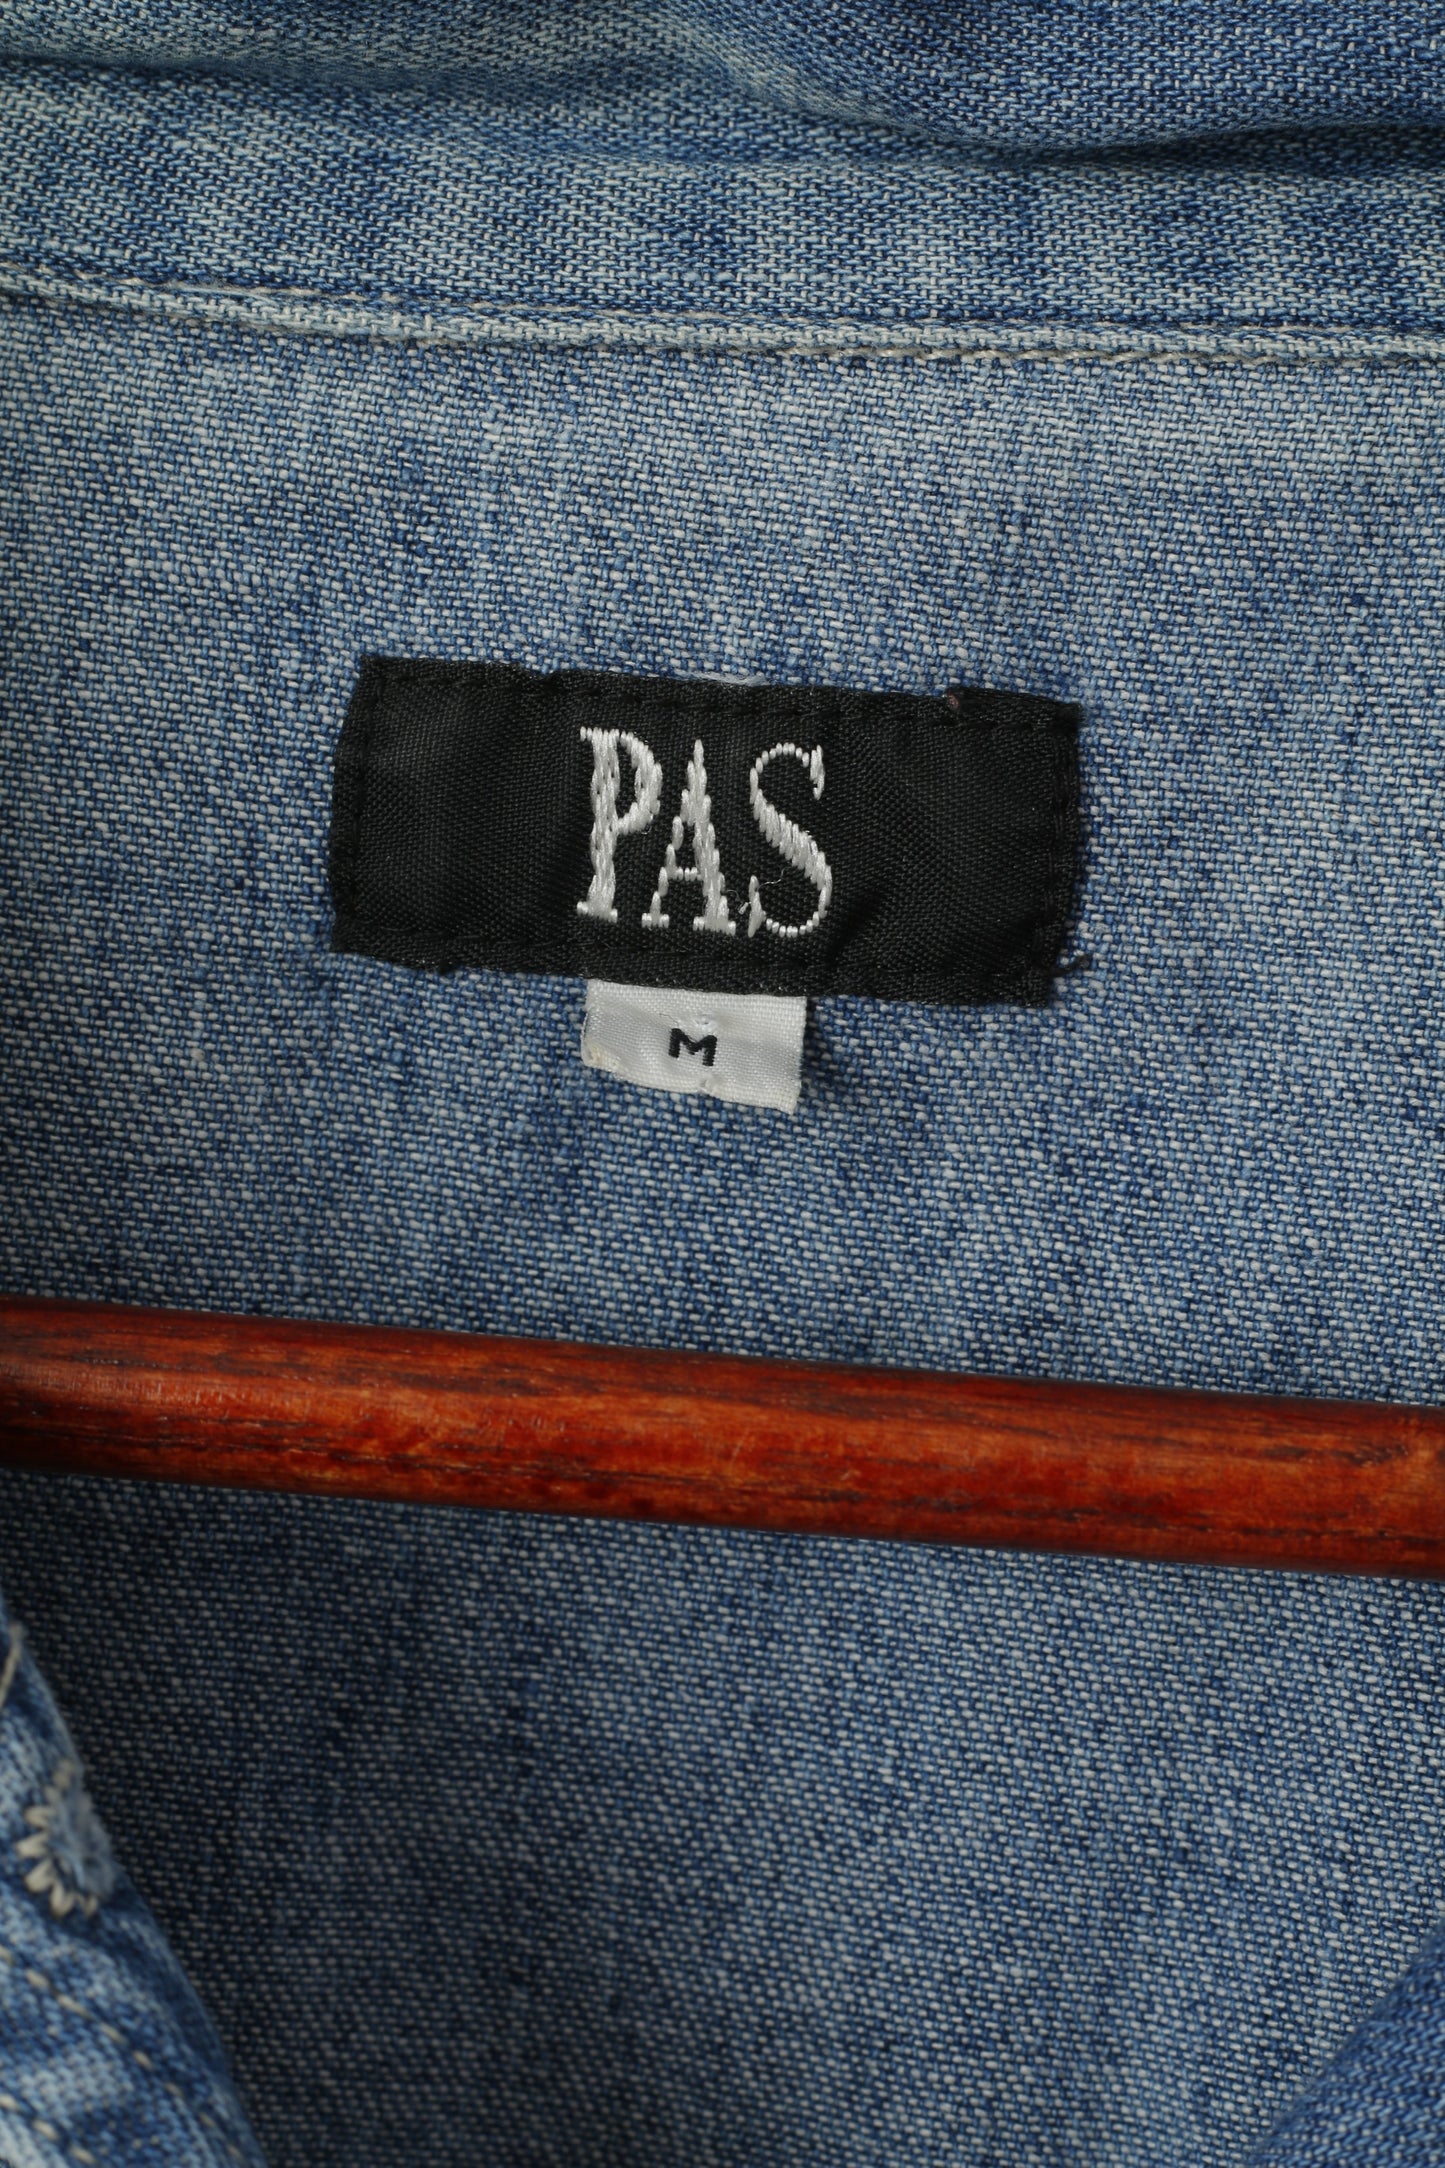 PAS Women M Denim Blazer Blue Jeans Denim Vintage Cotton Jacket Top